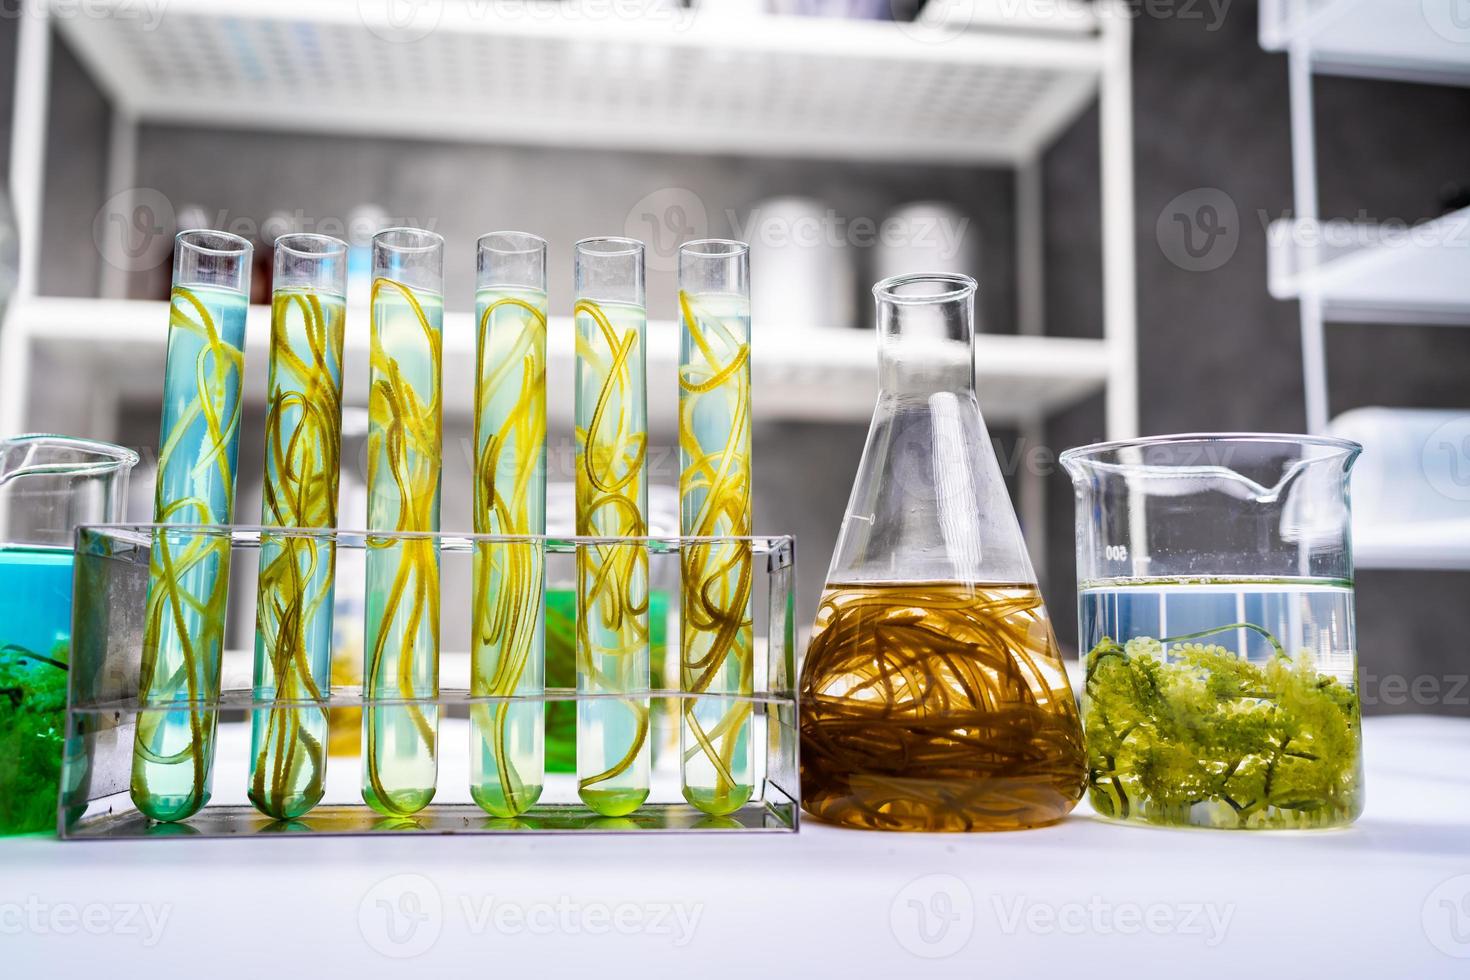 grünalgenlaborforschung, alternative biokraftstoff-energietechnologie, biotechnologiekonzept foto